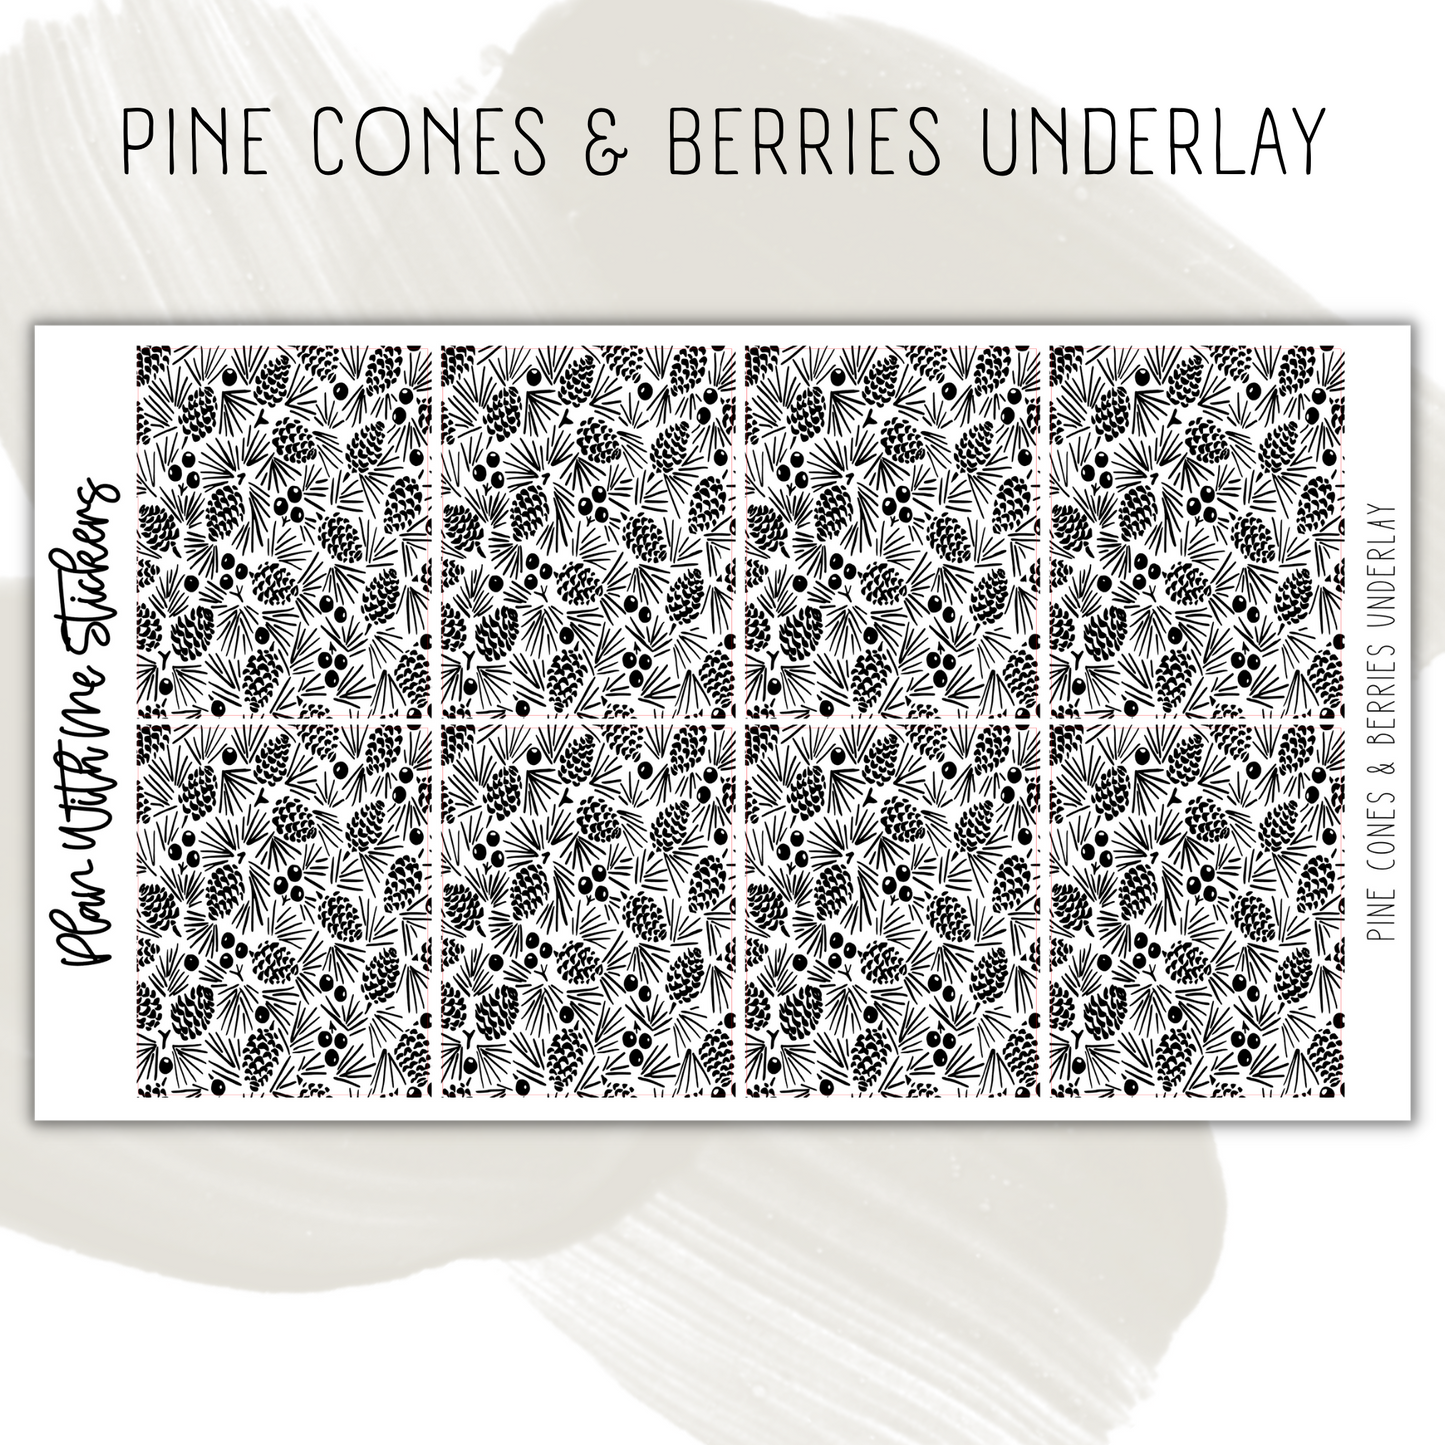 Pine Cones & Berries Underlay